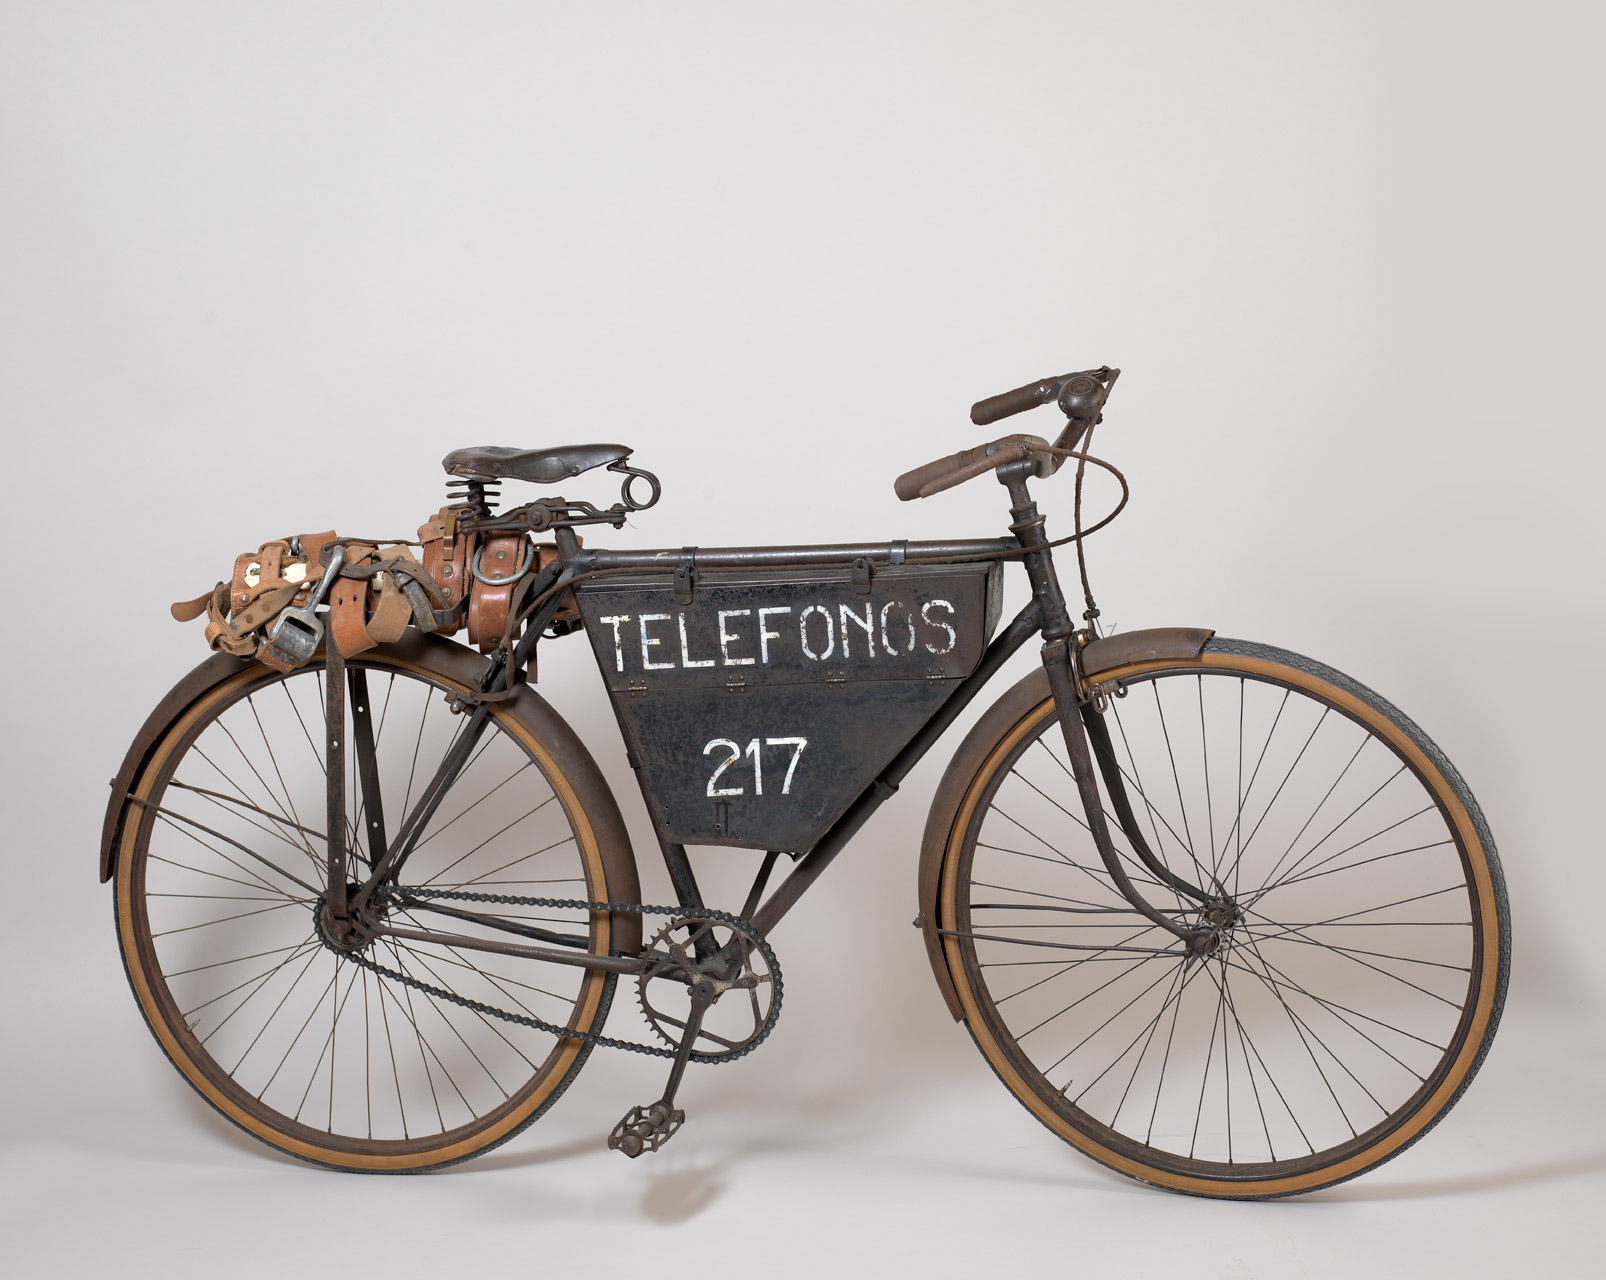   Bicicleta de celador, años 20